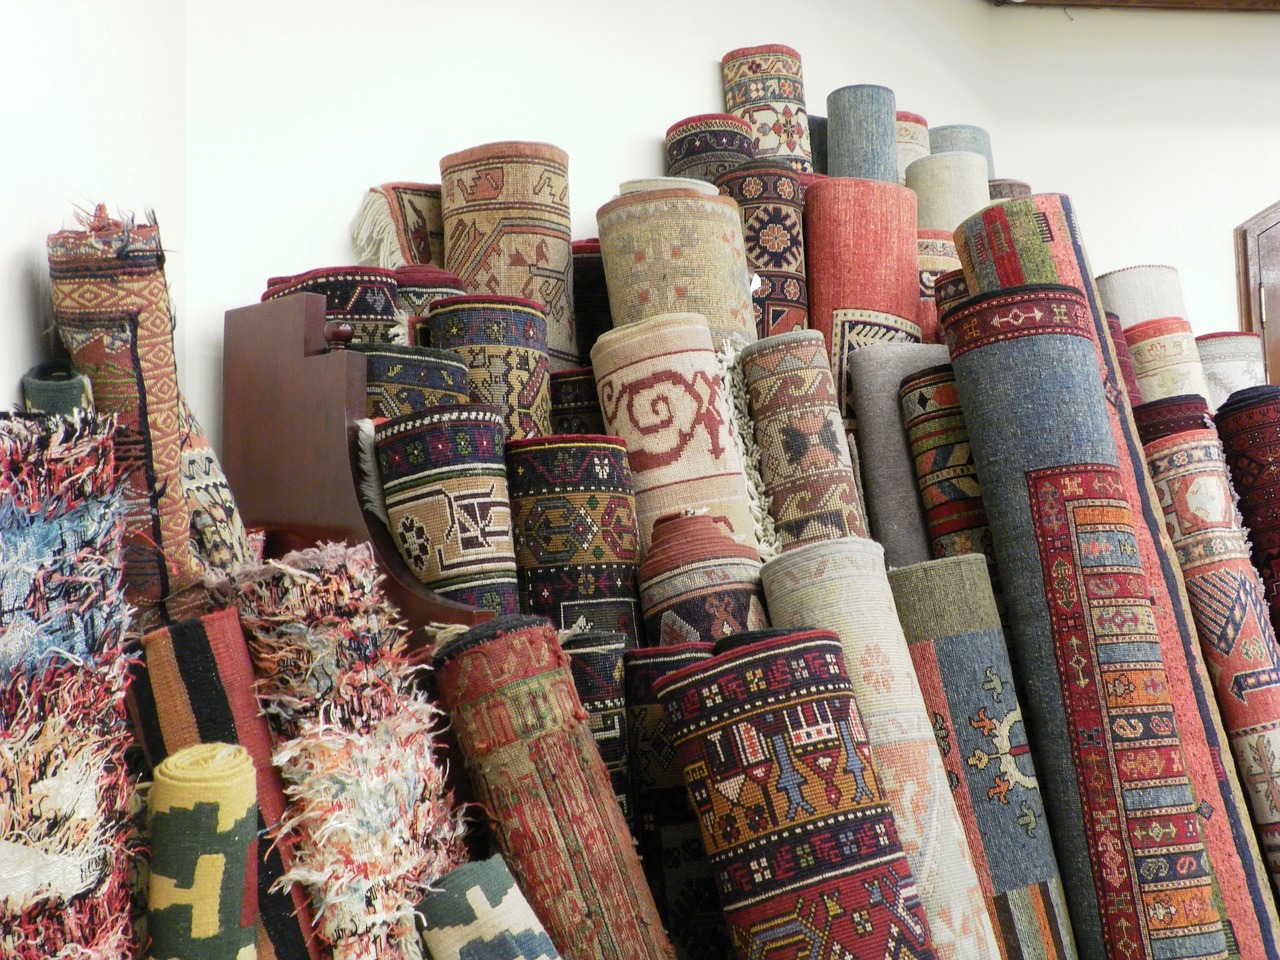   Где купить хорошие ковры в Анталии по доступным ценам 